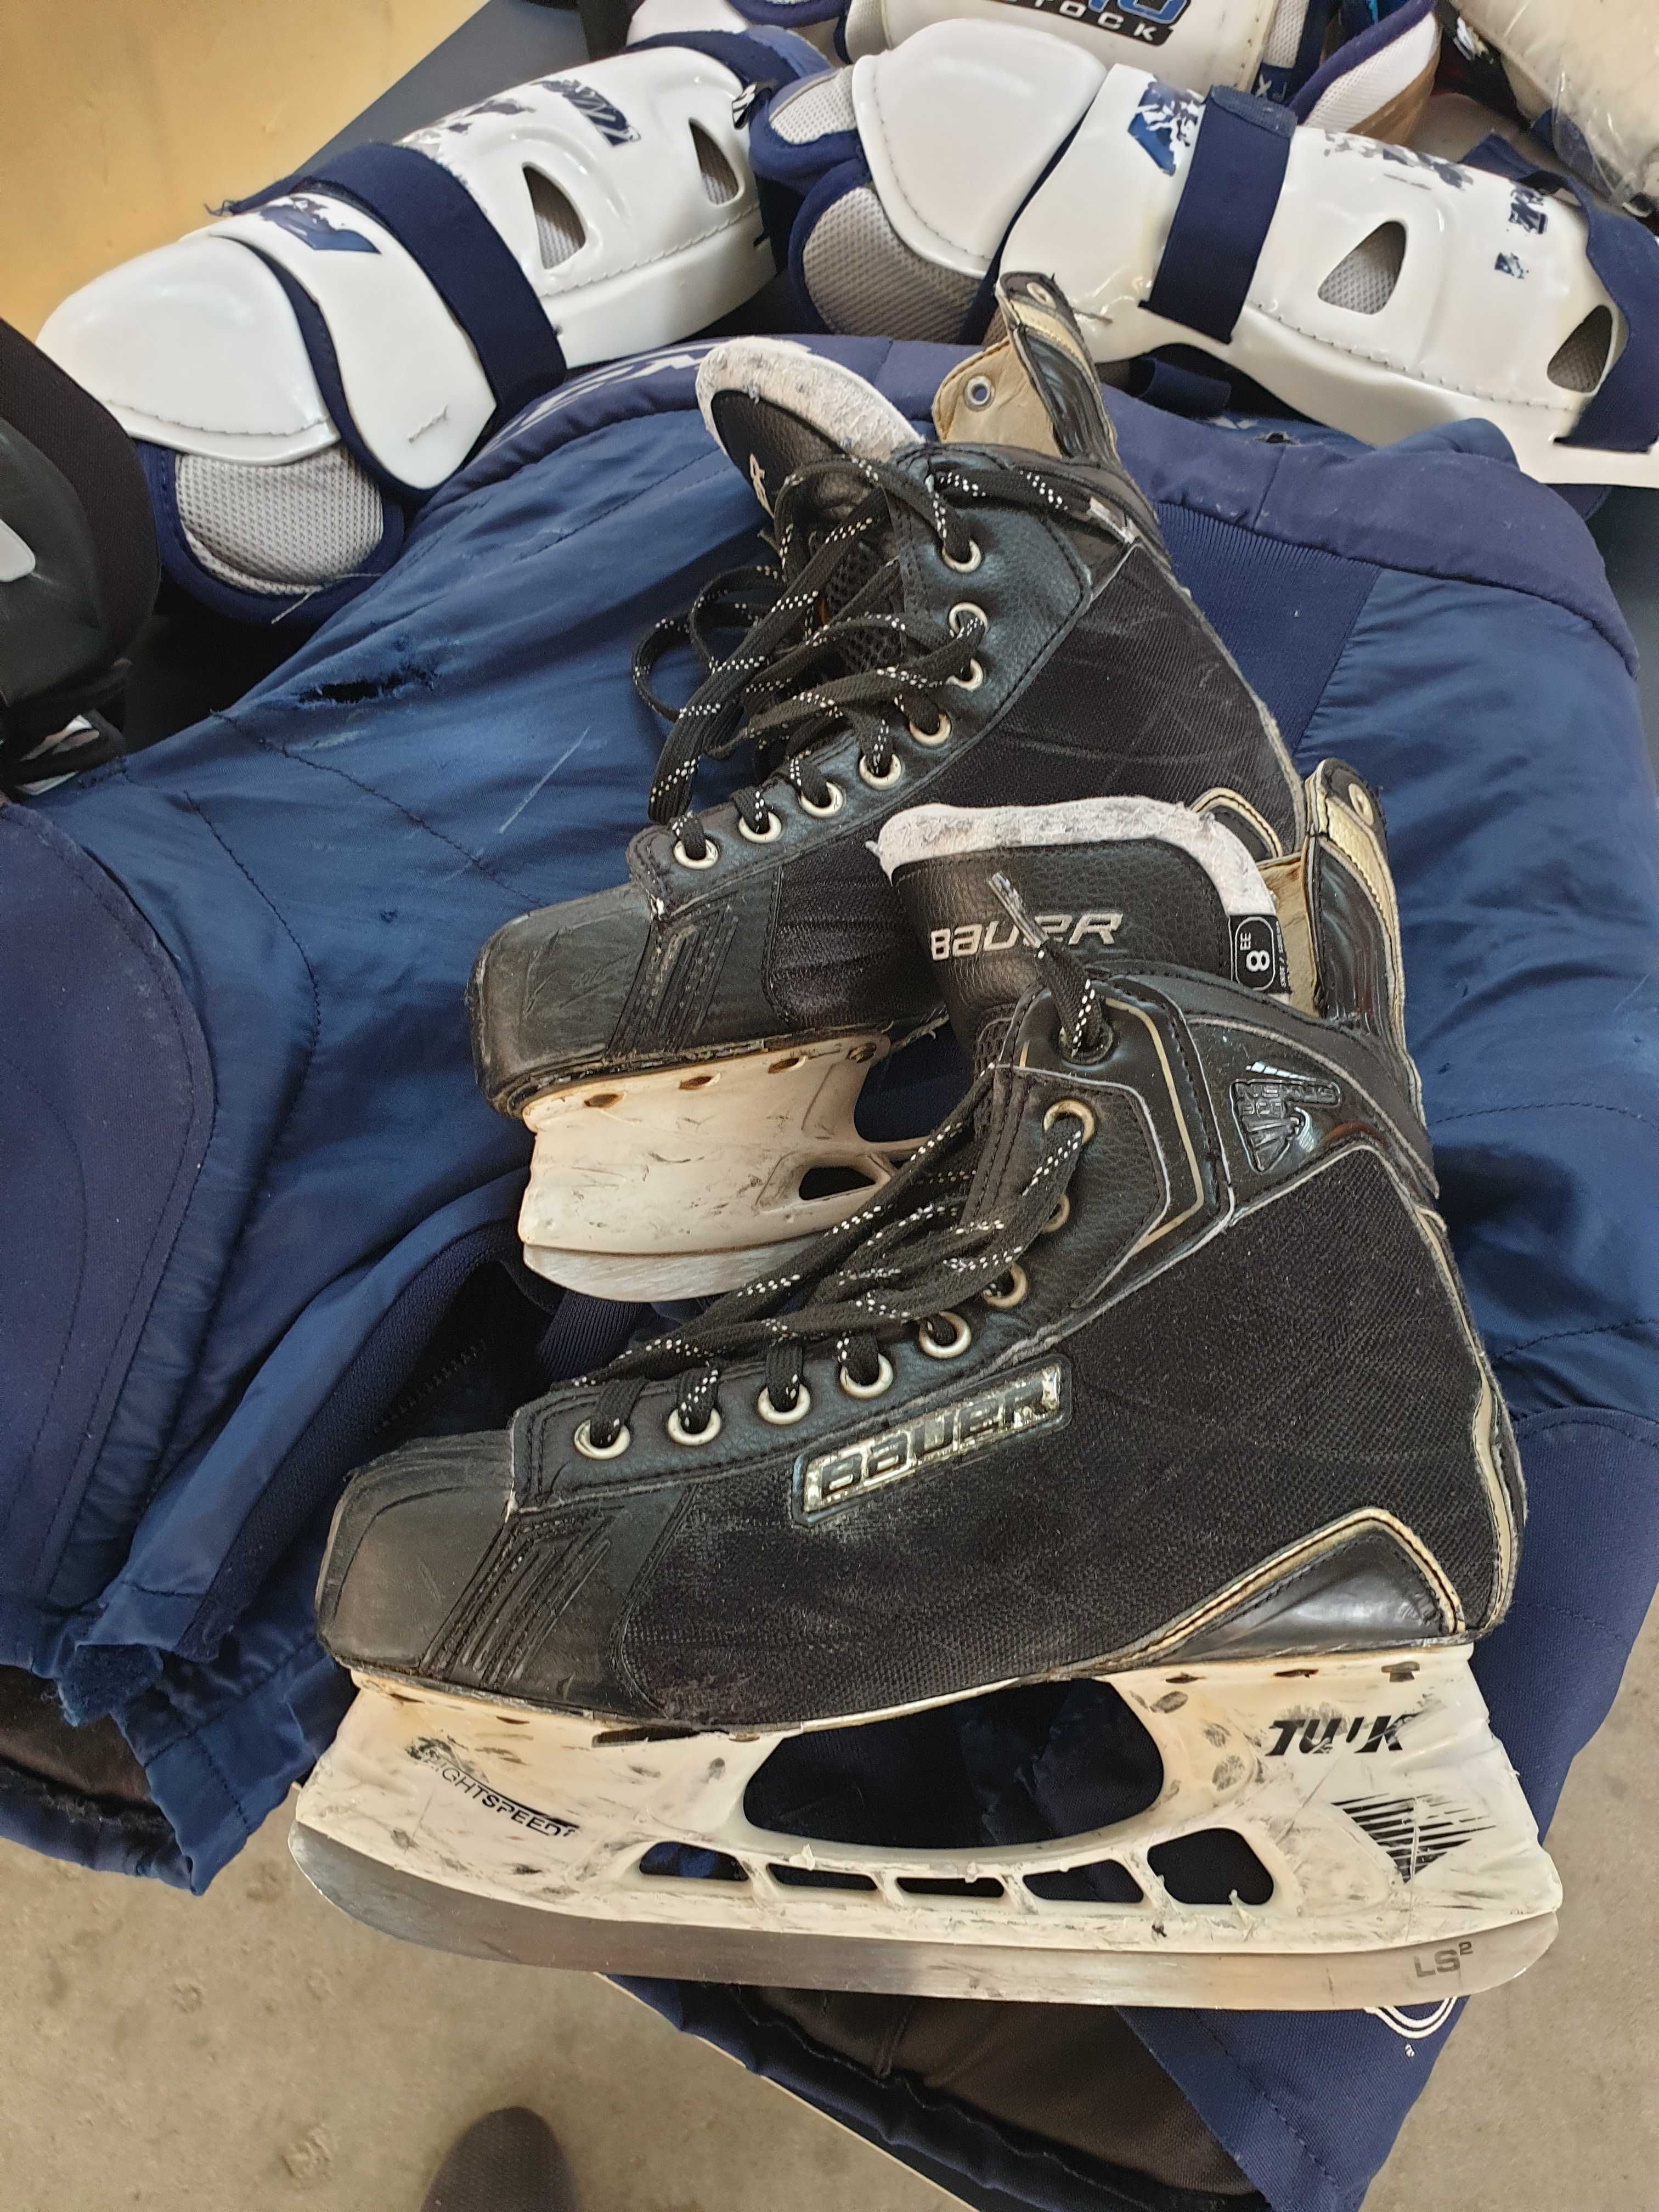 Sprzęt do hokeja, łyżwy, kaski, ochraniacze, kij oraz torba